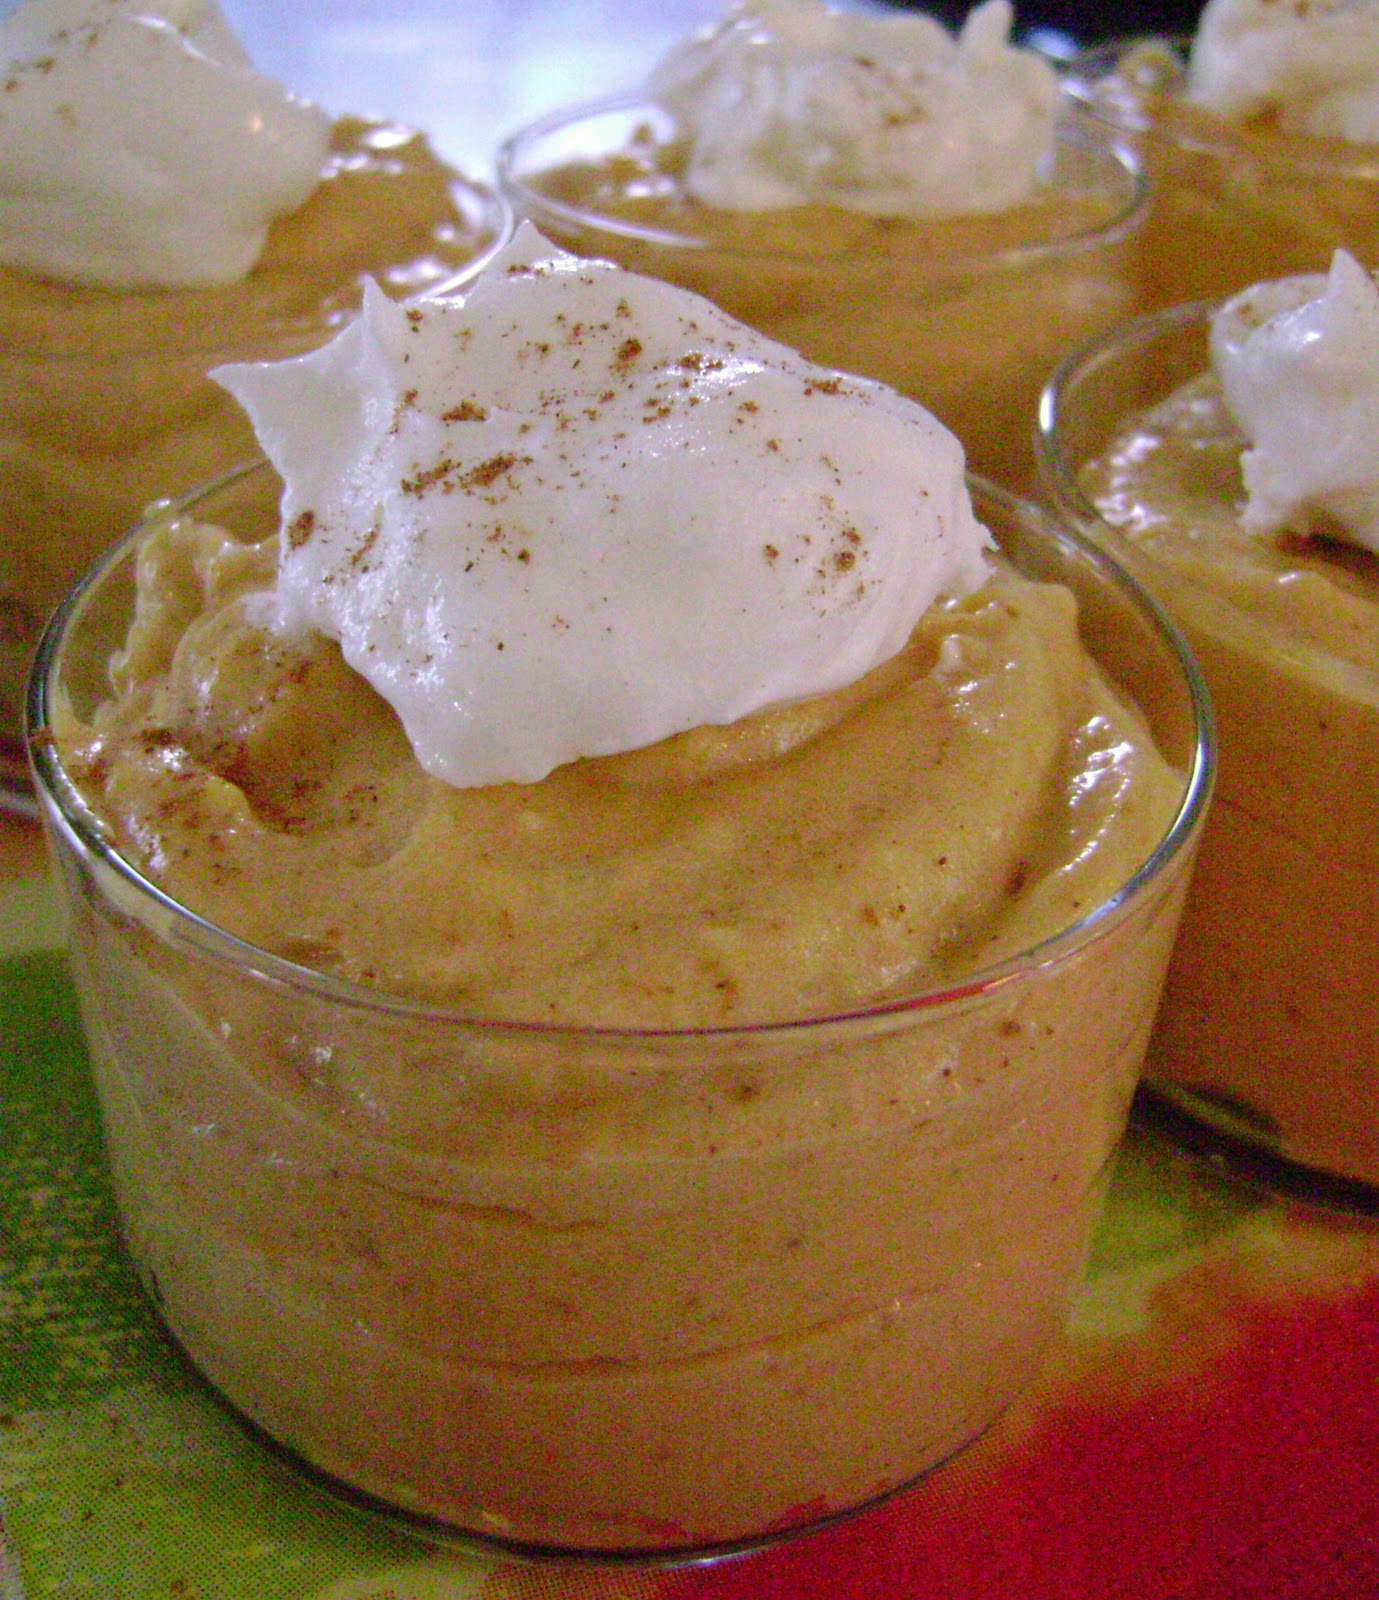 pumpkin mousse low cal recipes calorie healthy dessert fat pie desserts sue jo calories joandsue recipe mouse pudding carbs nutritional